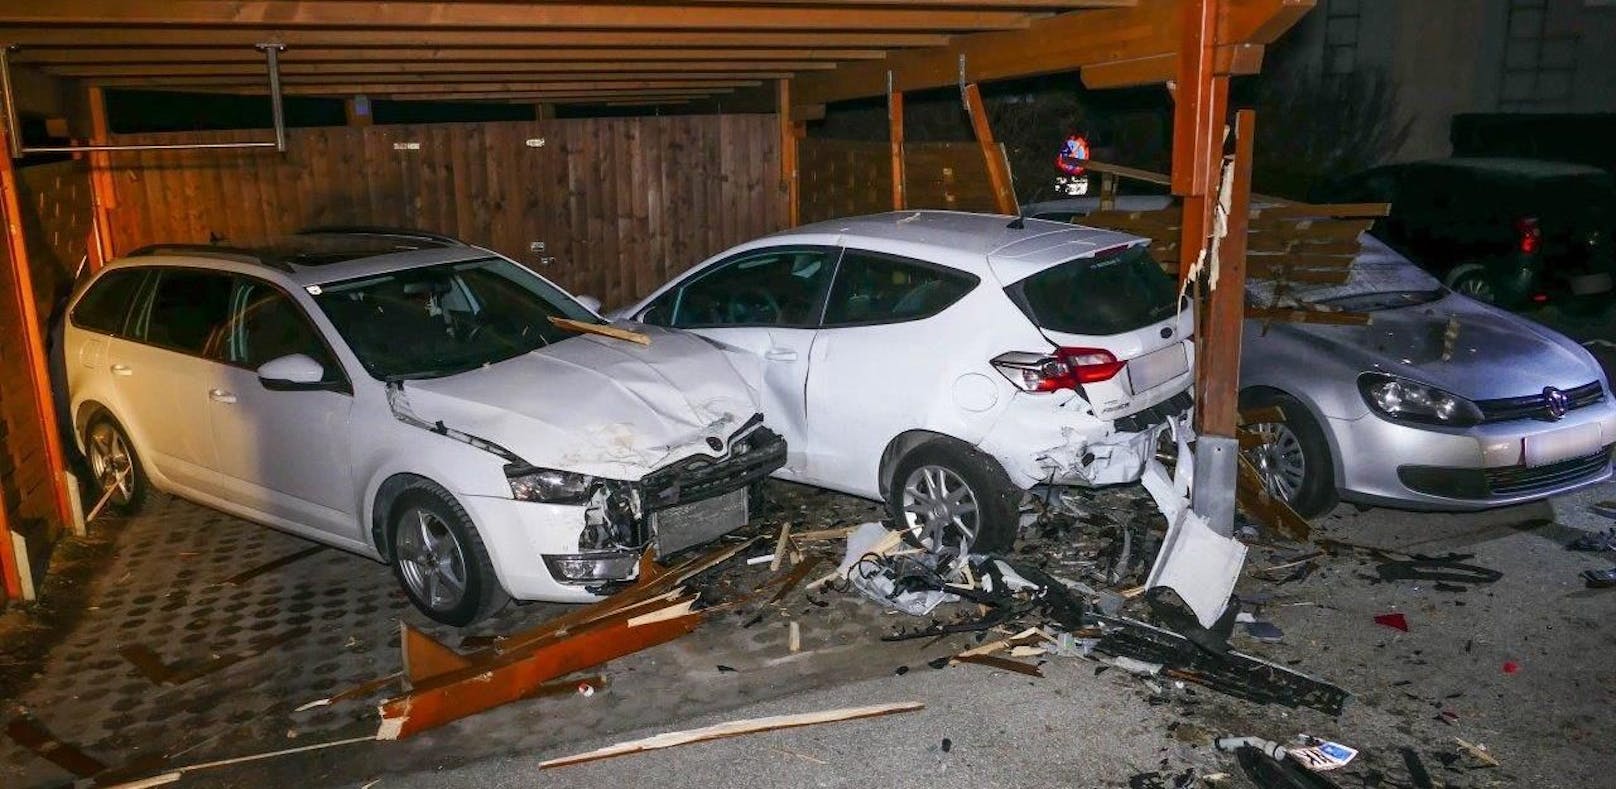 Alkolenkerin zerstörte bei Unfall 4 Autos und Carport